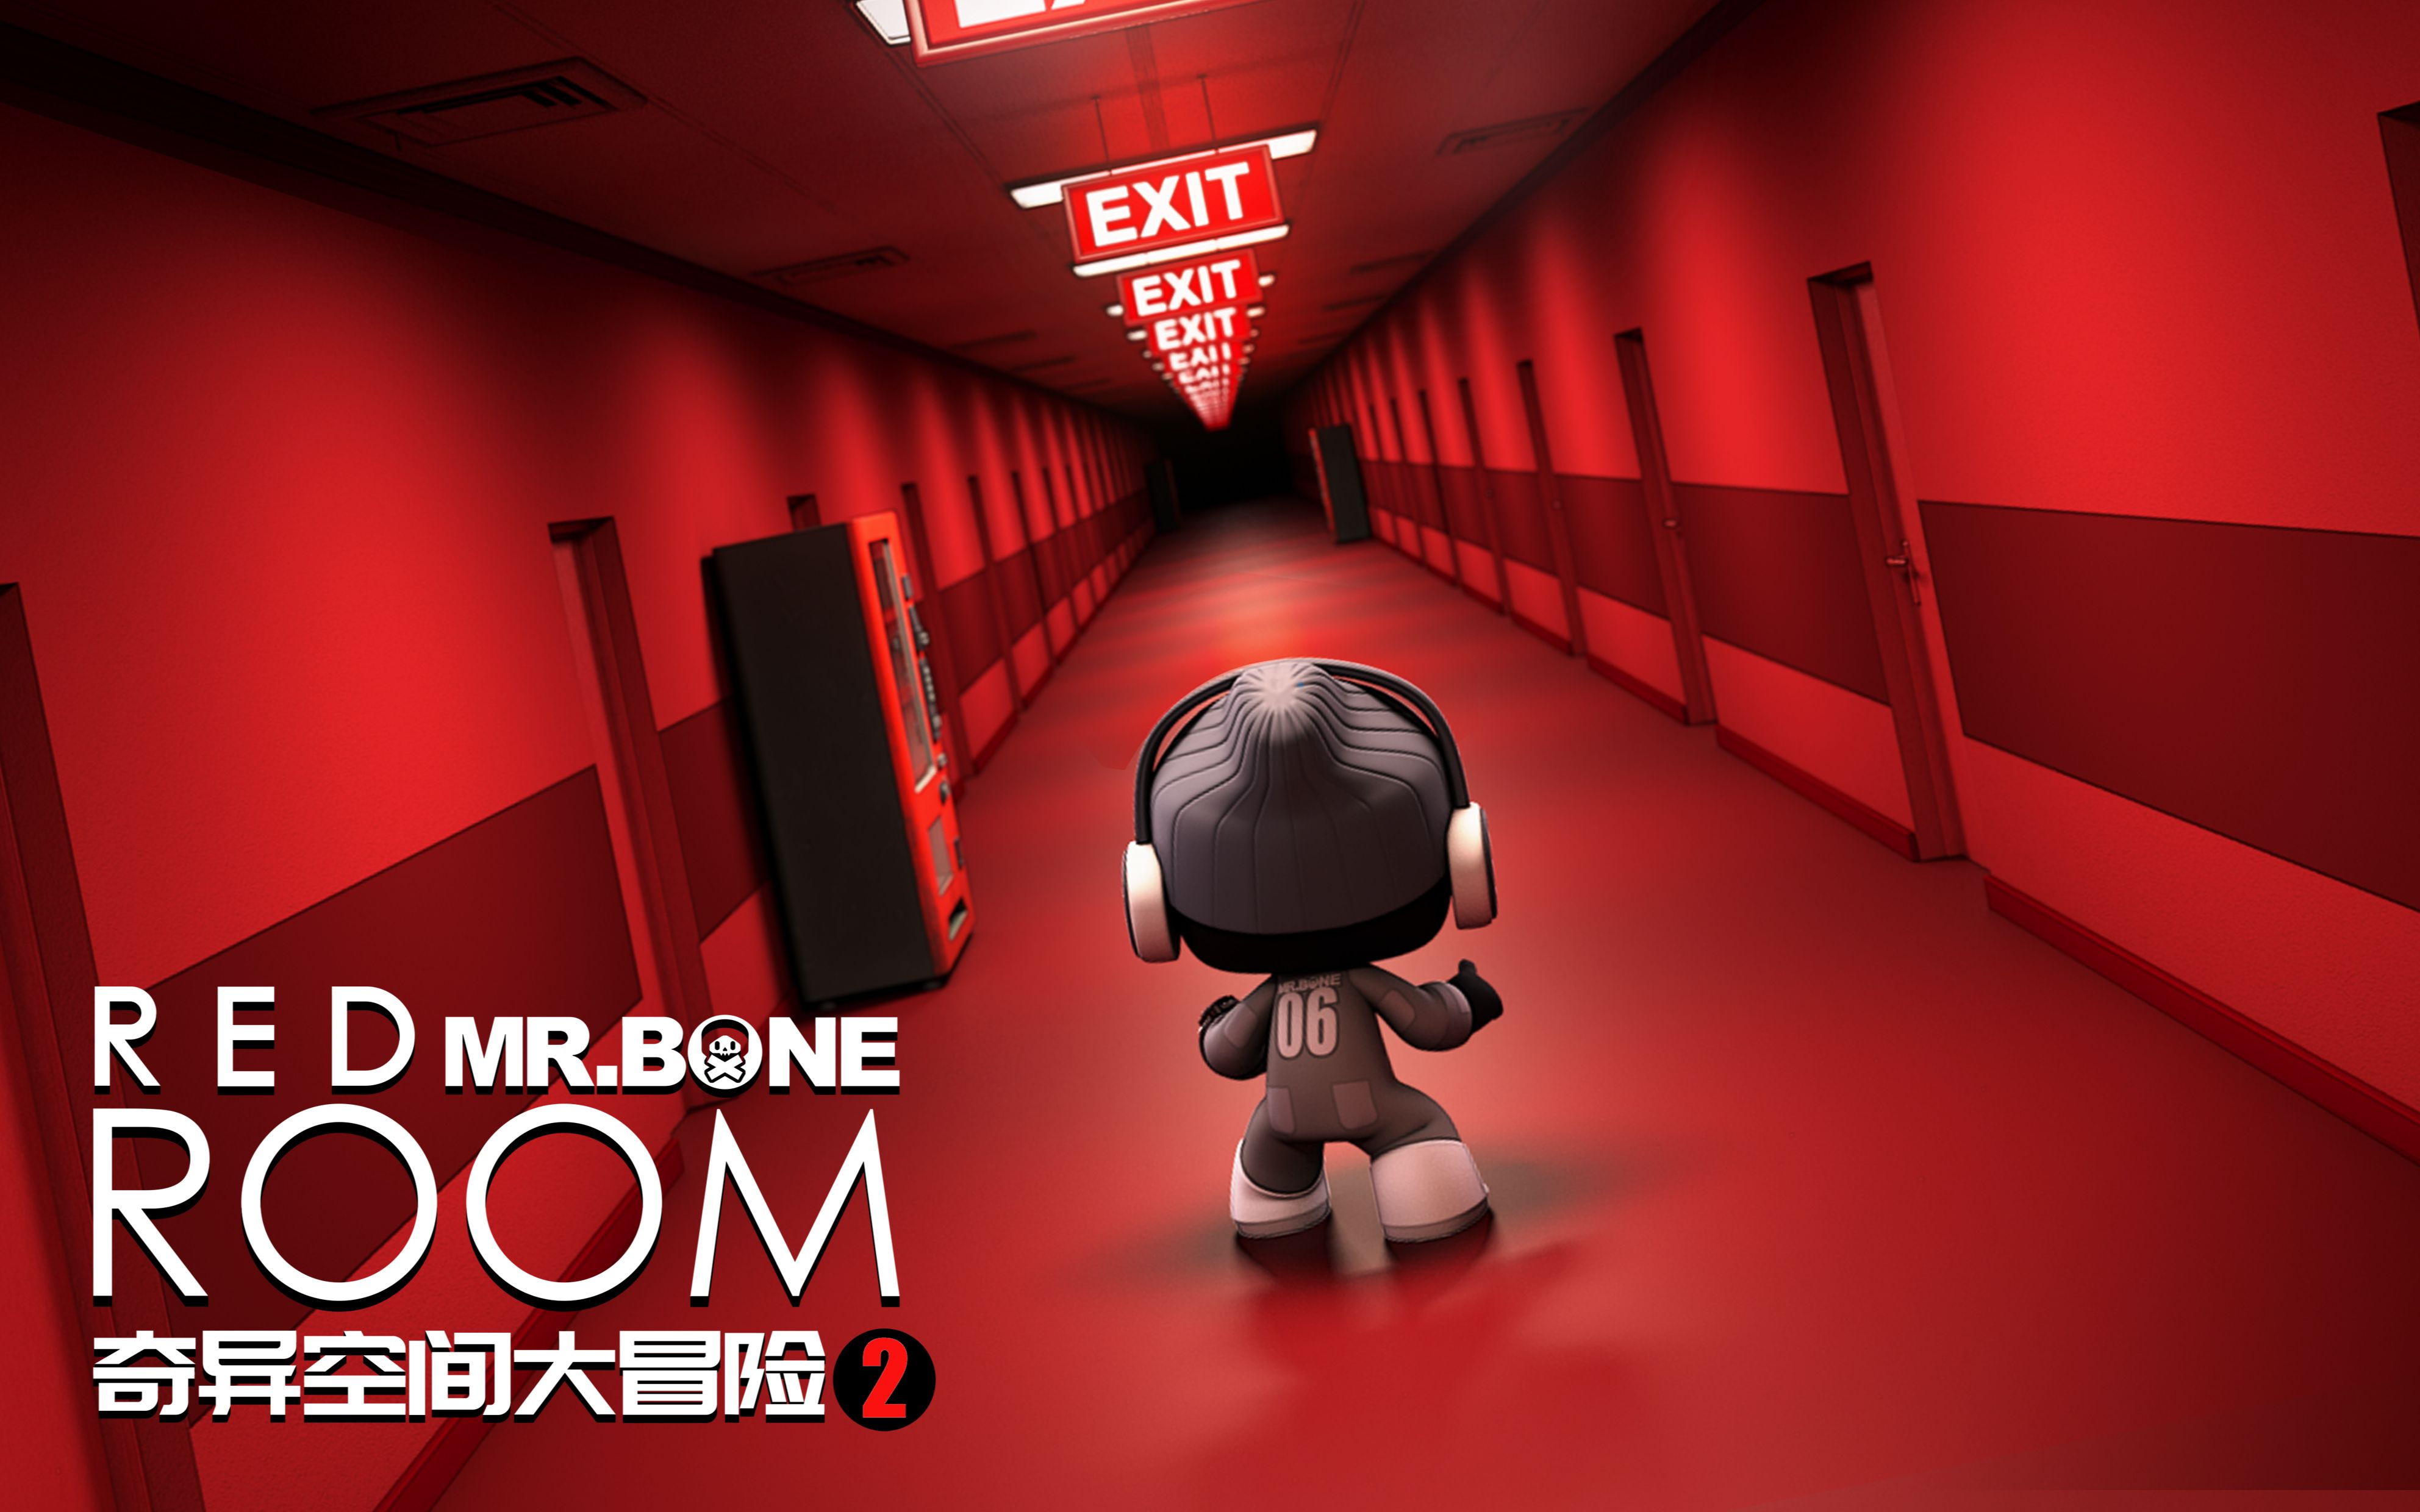 MR.BONE之BONE的后室大冒险第2集！Level！十公里长廊（你猜有没有十公里？）